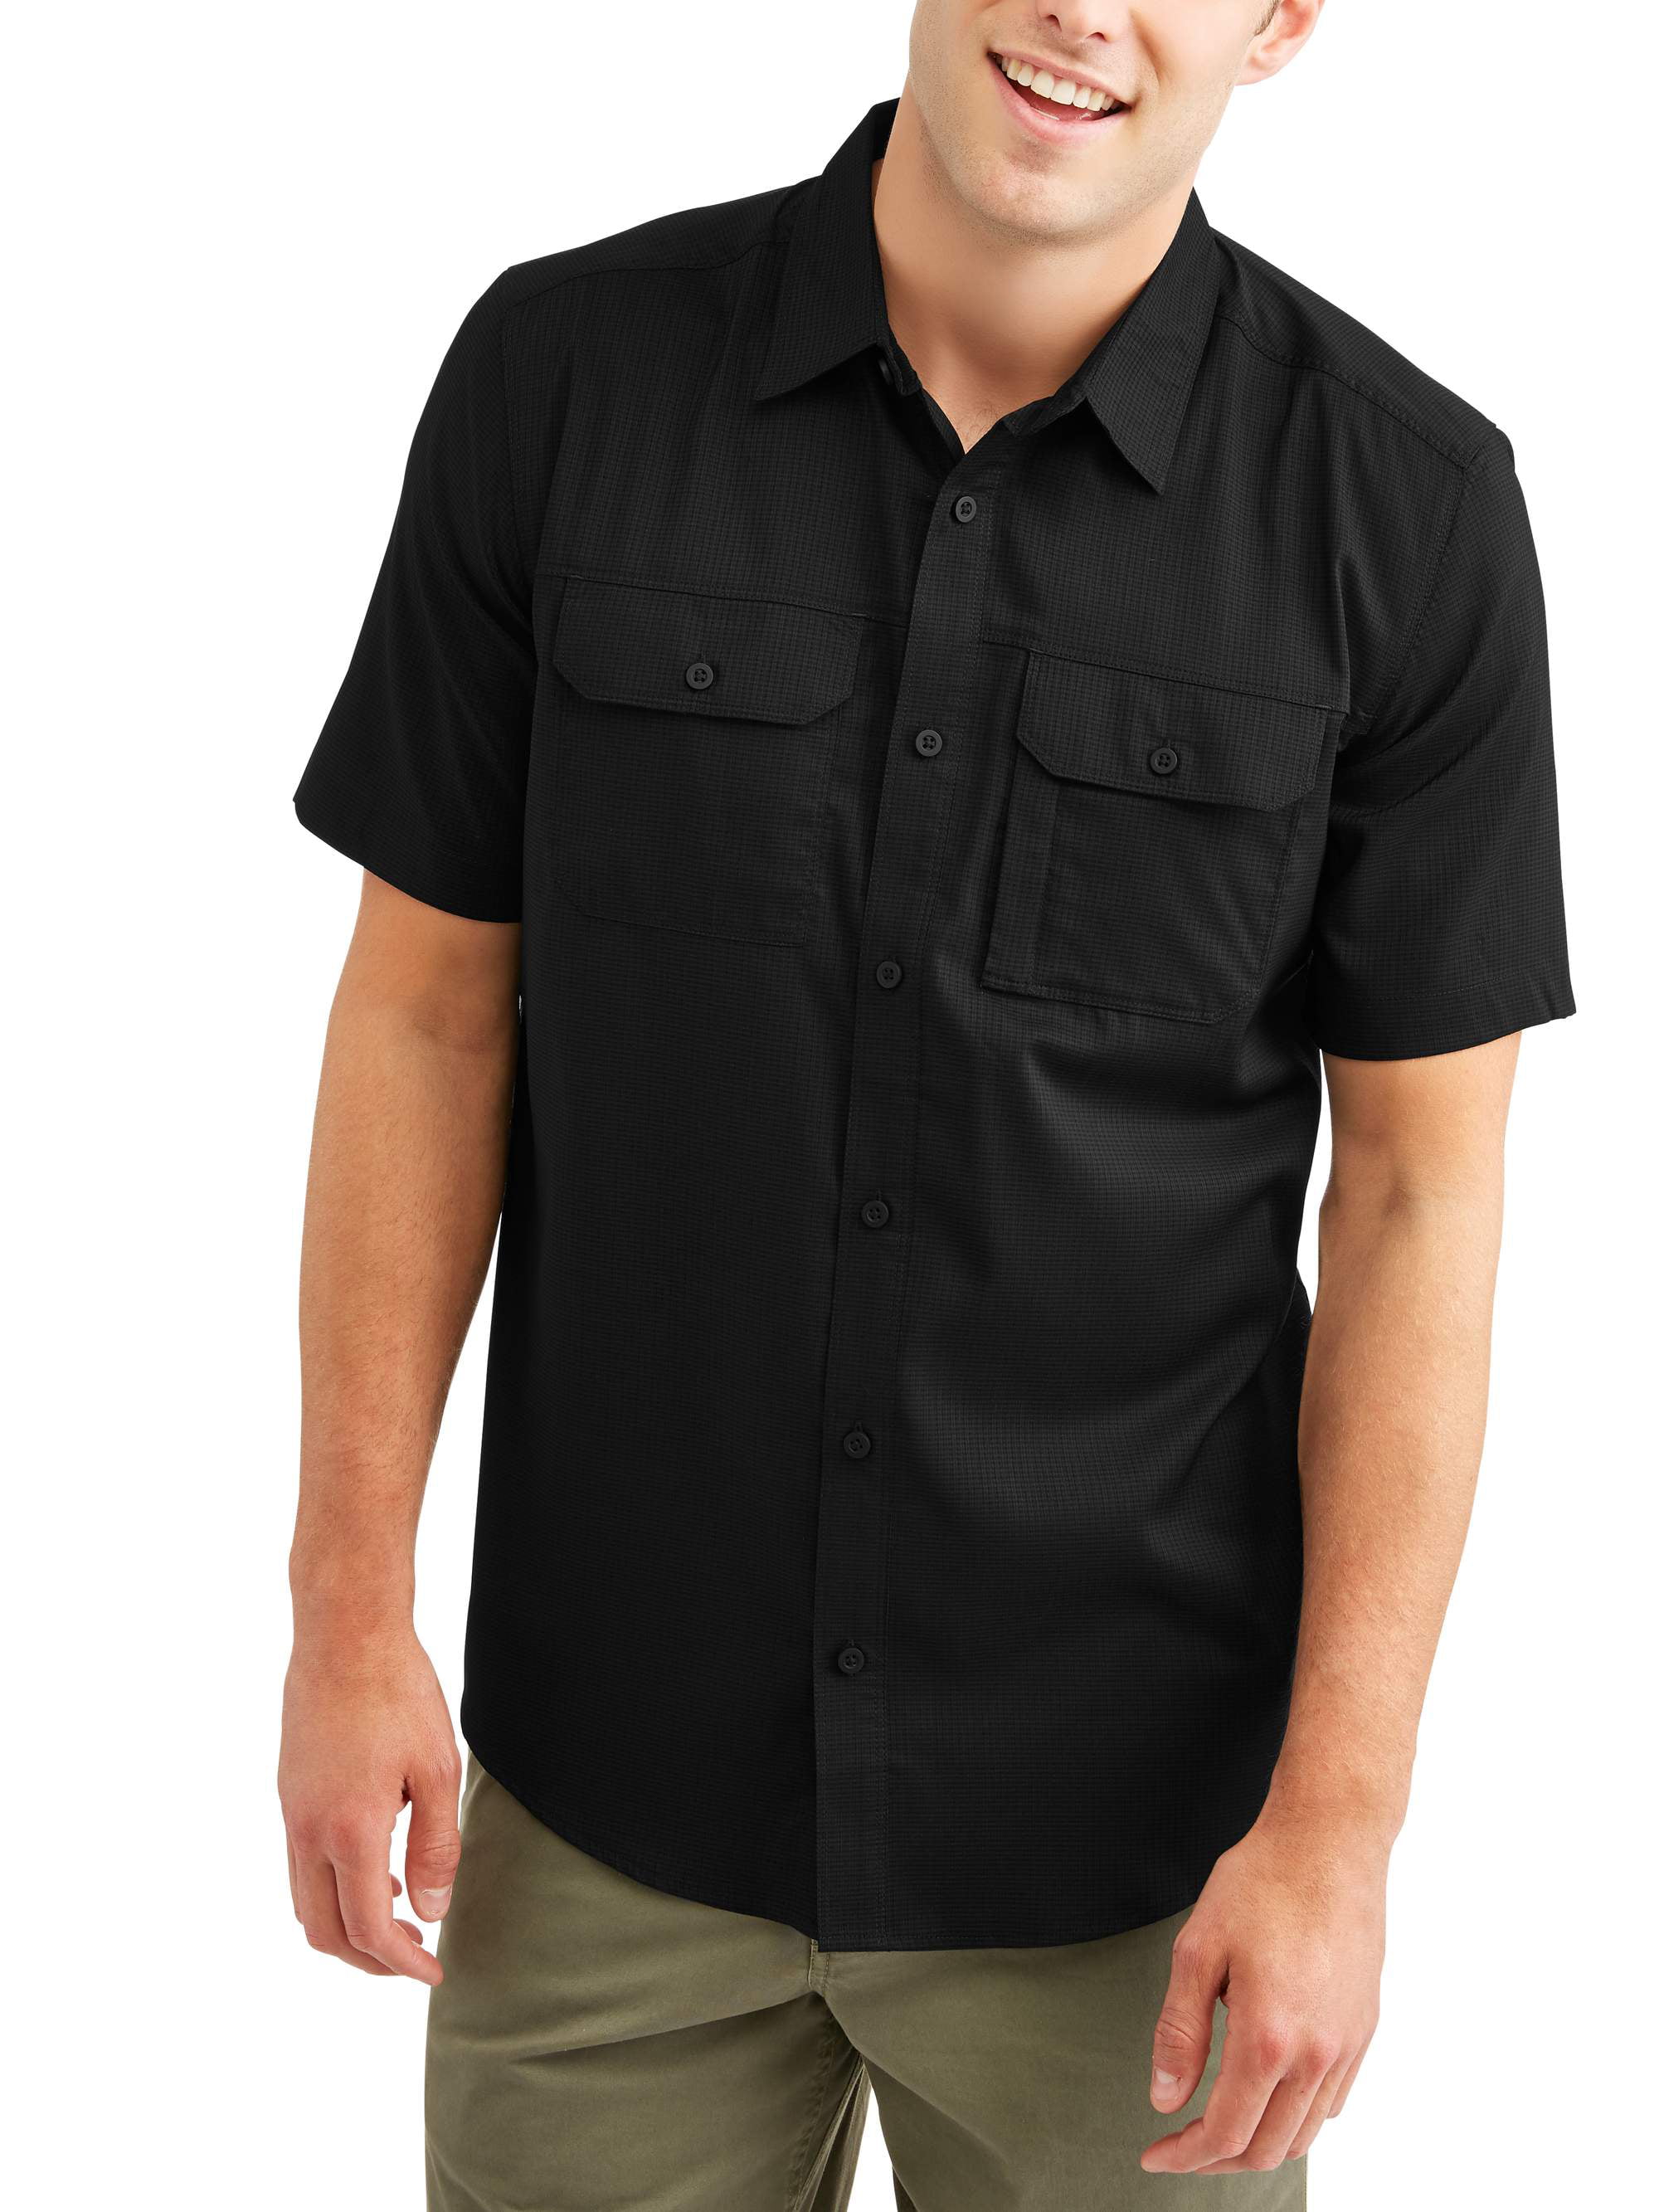 Swiss Tech - Big Men's Short Sleeve Outdoor Woven Shirt - Walmart.com ...